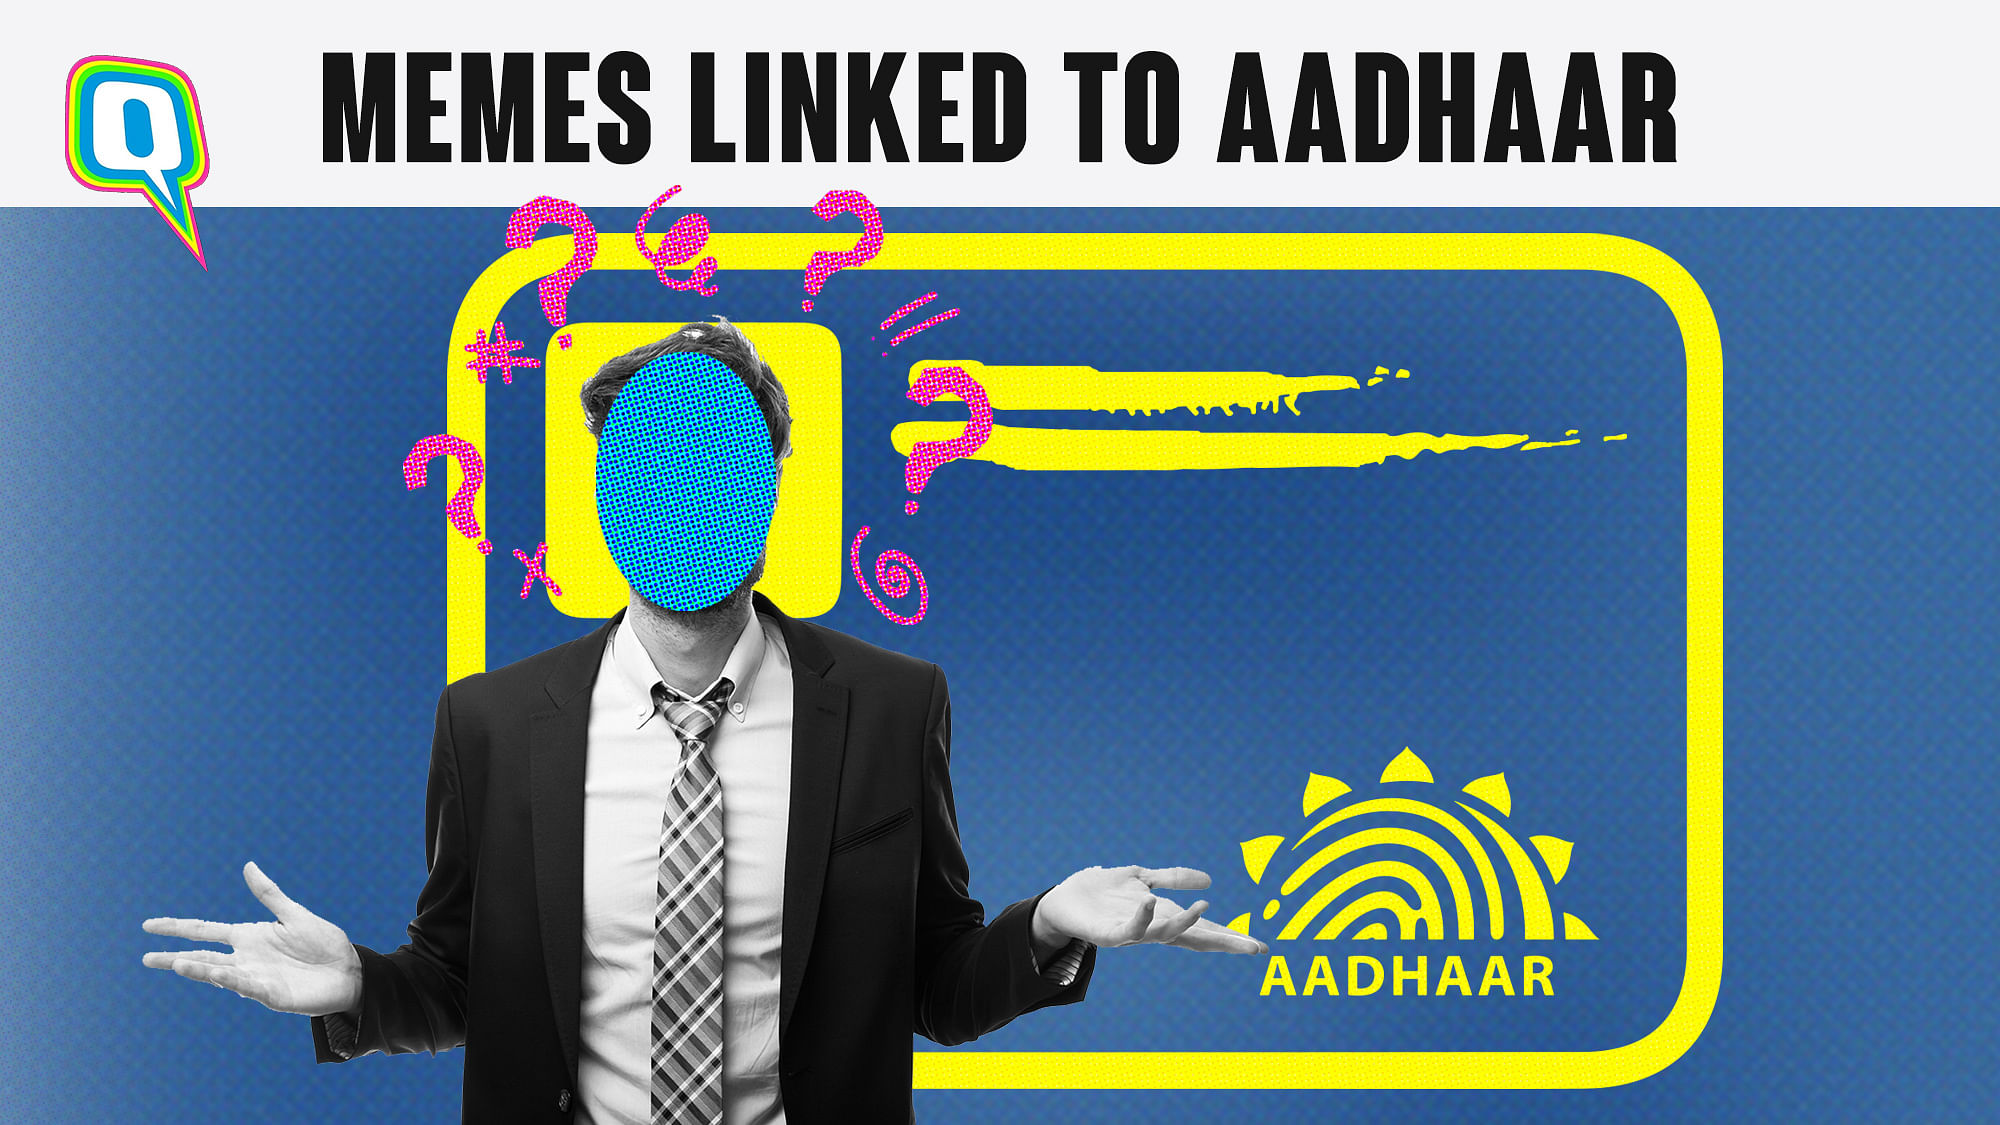 Memes linked to Aadhaar